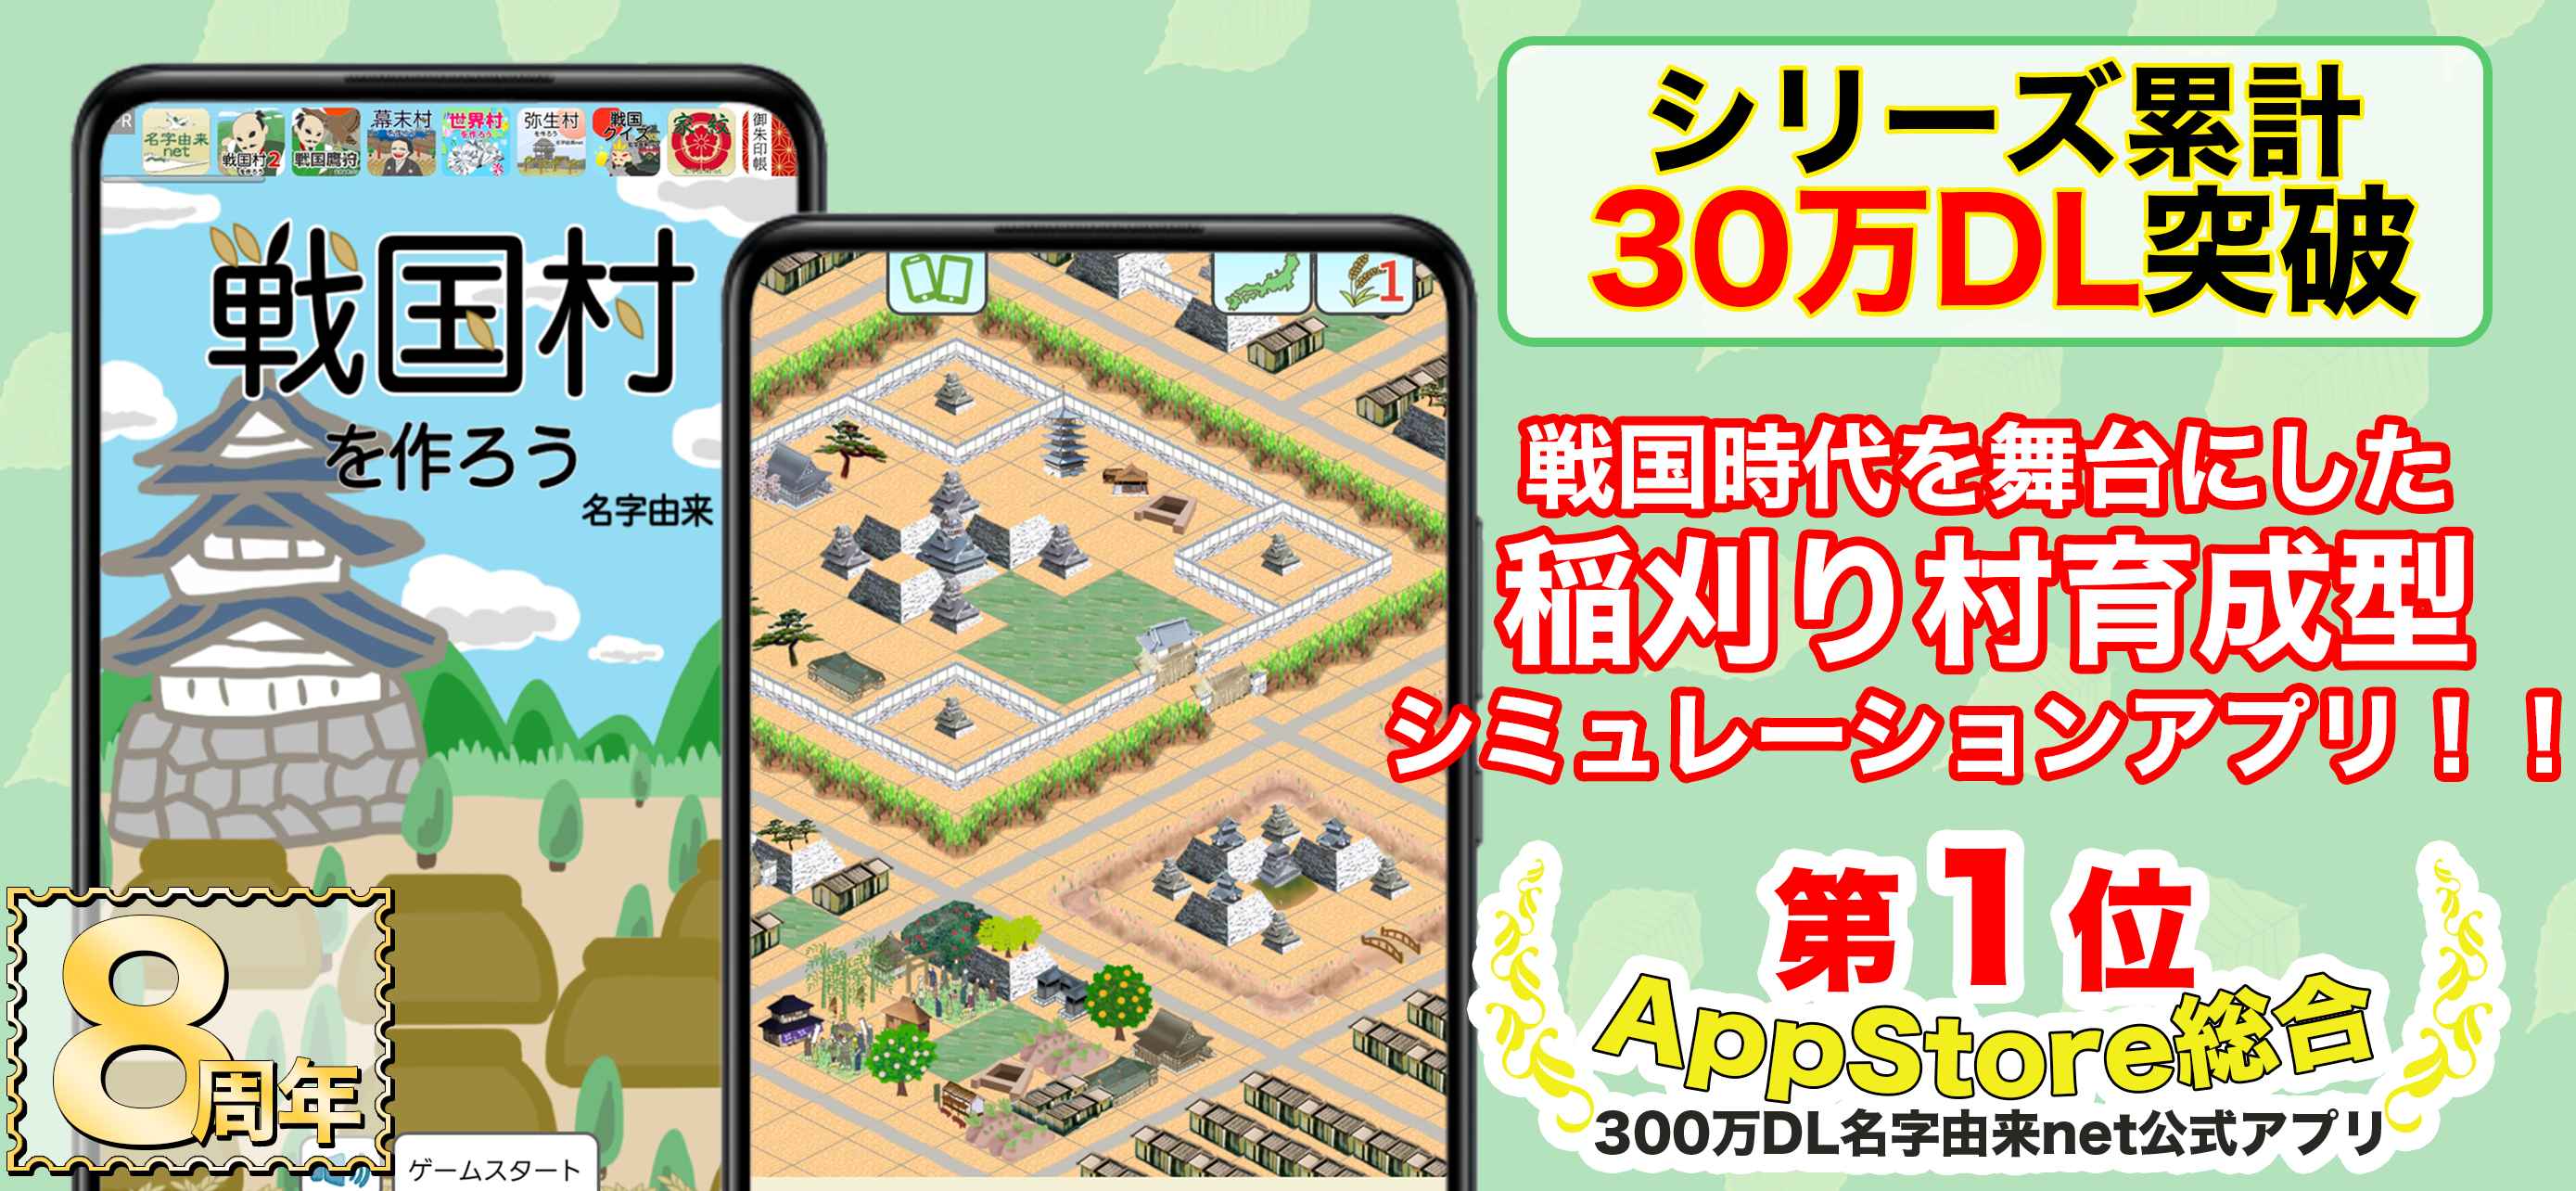 Screenshot 1 of มาสร้างหมู่บ้าน Sengoku กันเถอะ! มุ่งหมายที่จะรวมโลกให้เป็นหนึ่งเดียวกับขุนศึก Sengoku การเก็บเกี่ยวข้าวและการต่อสู้เพื่อบำรุงหมู่บ้าน 9.0.8